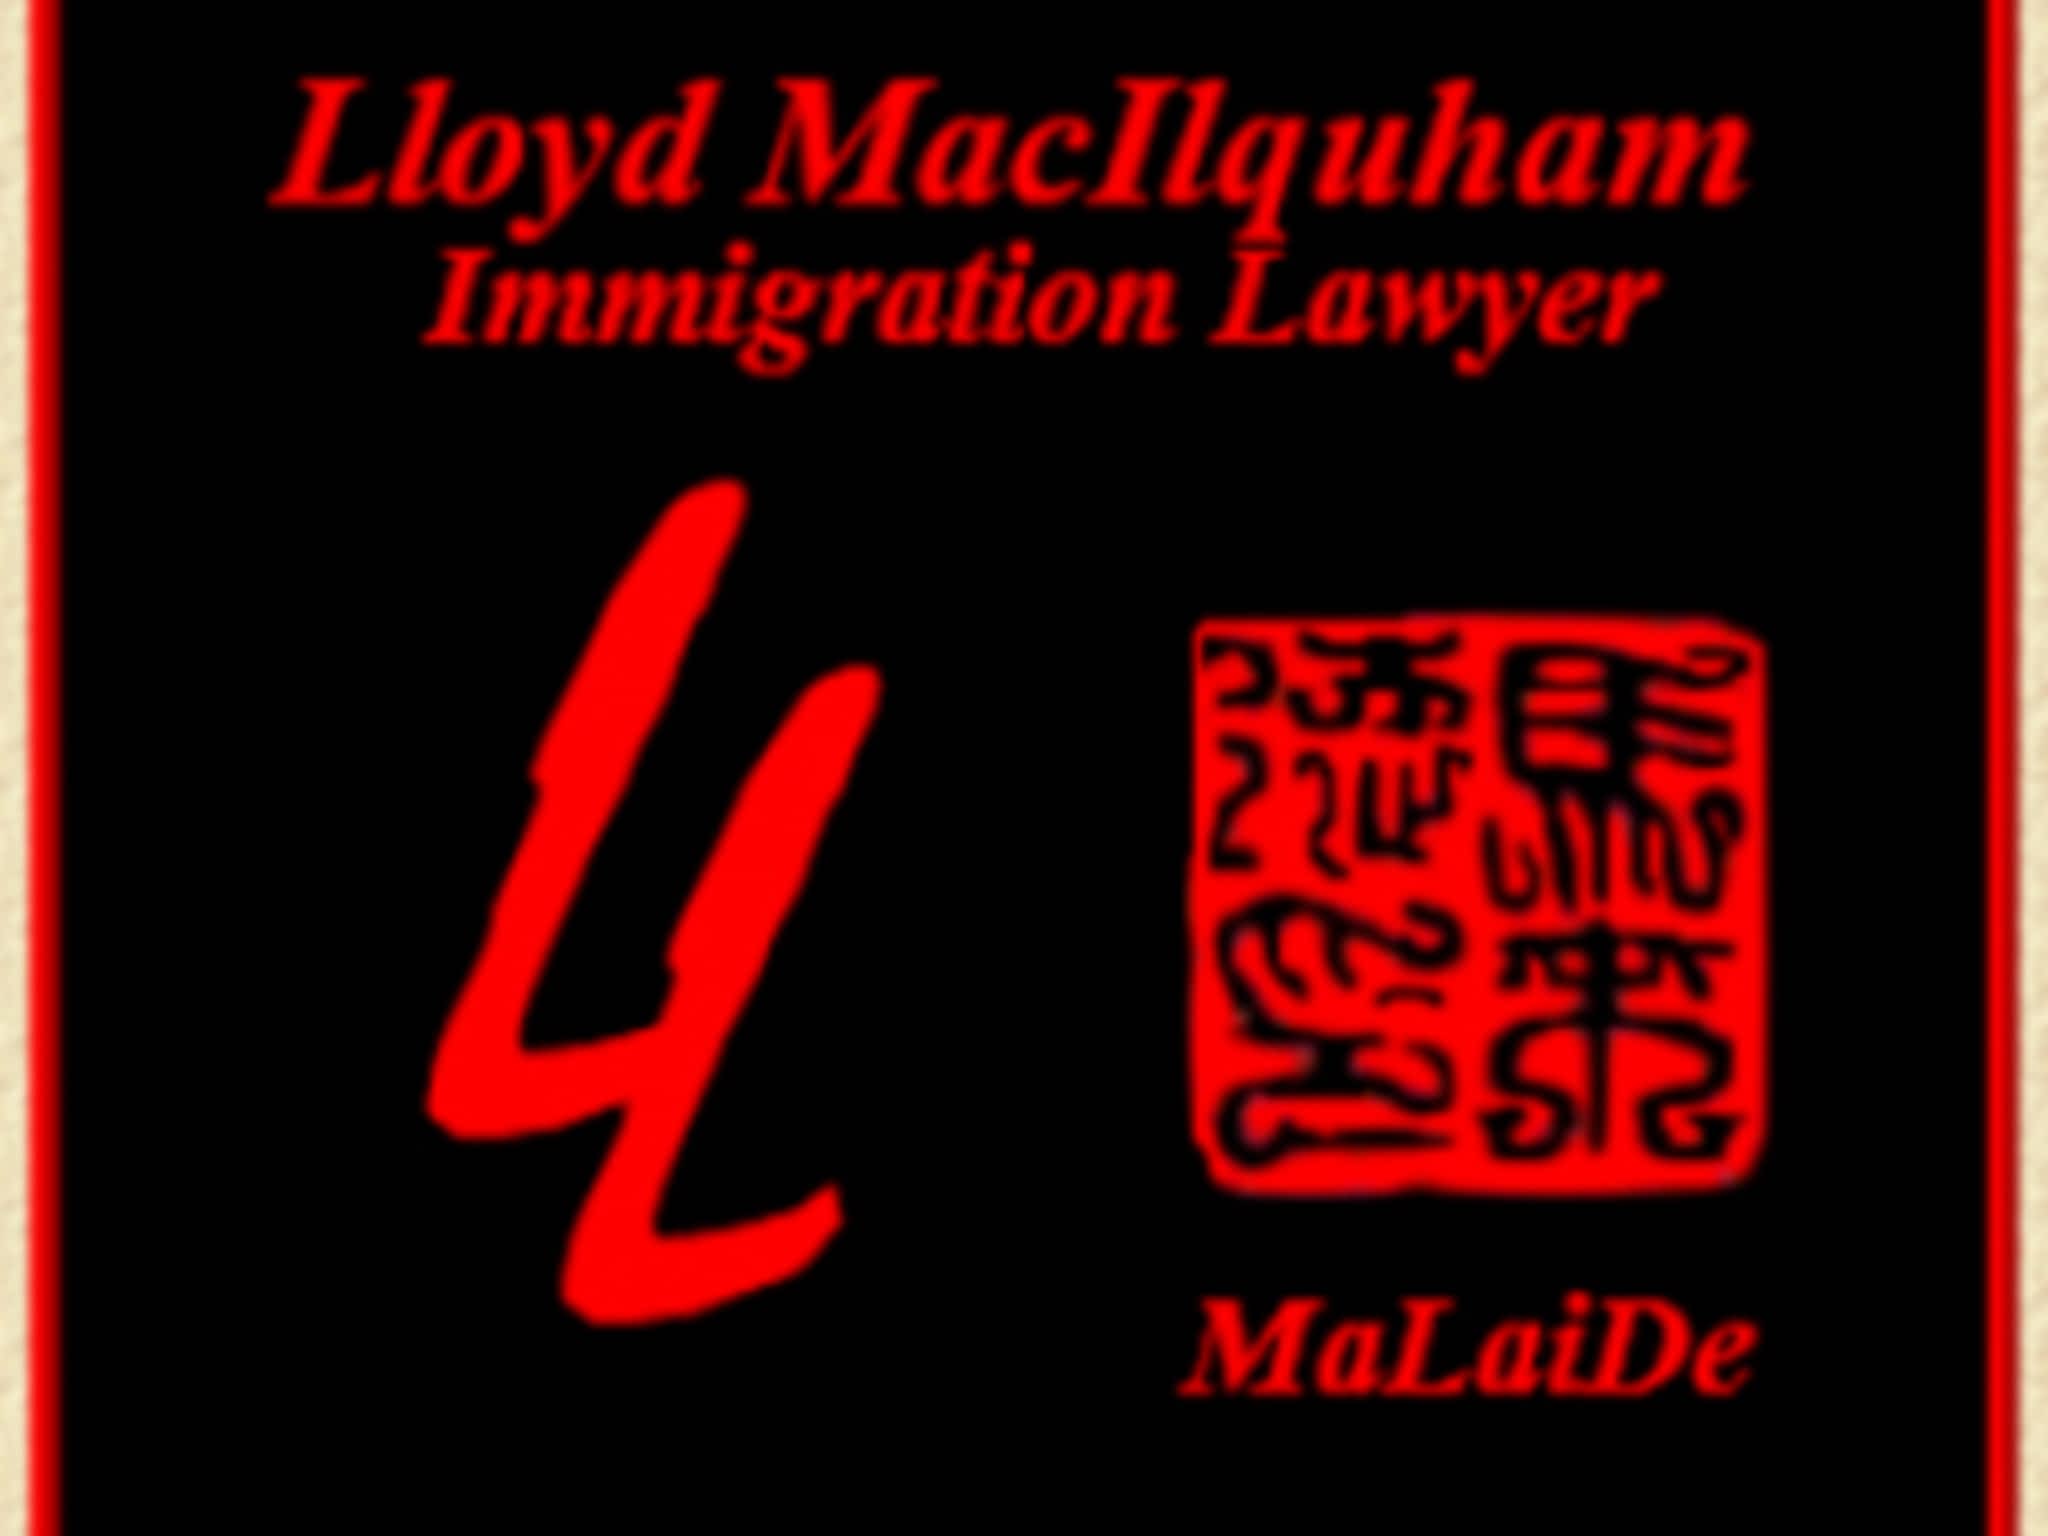 photo W Lloyd Macilquham - Lawyer - Immigration Law